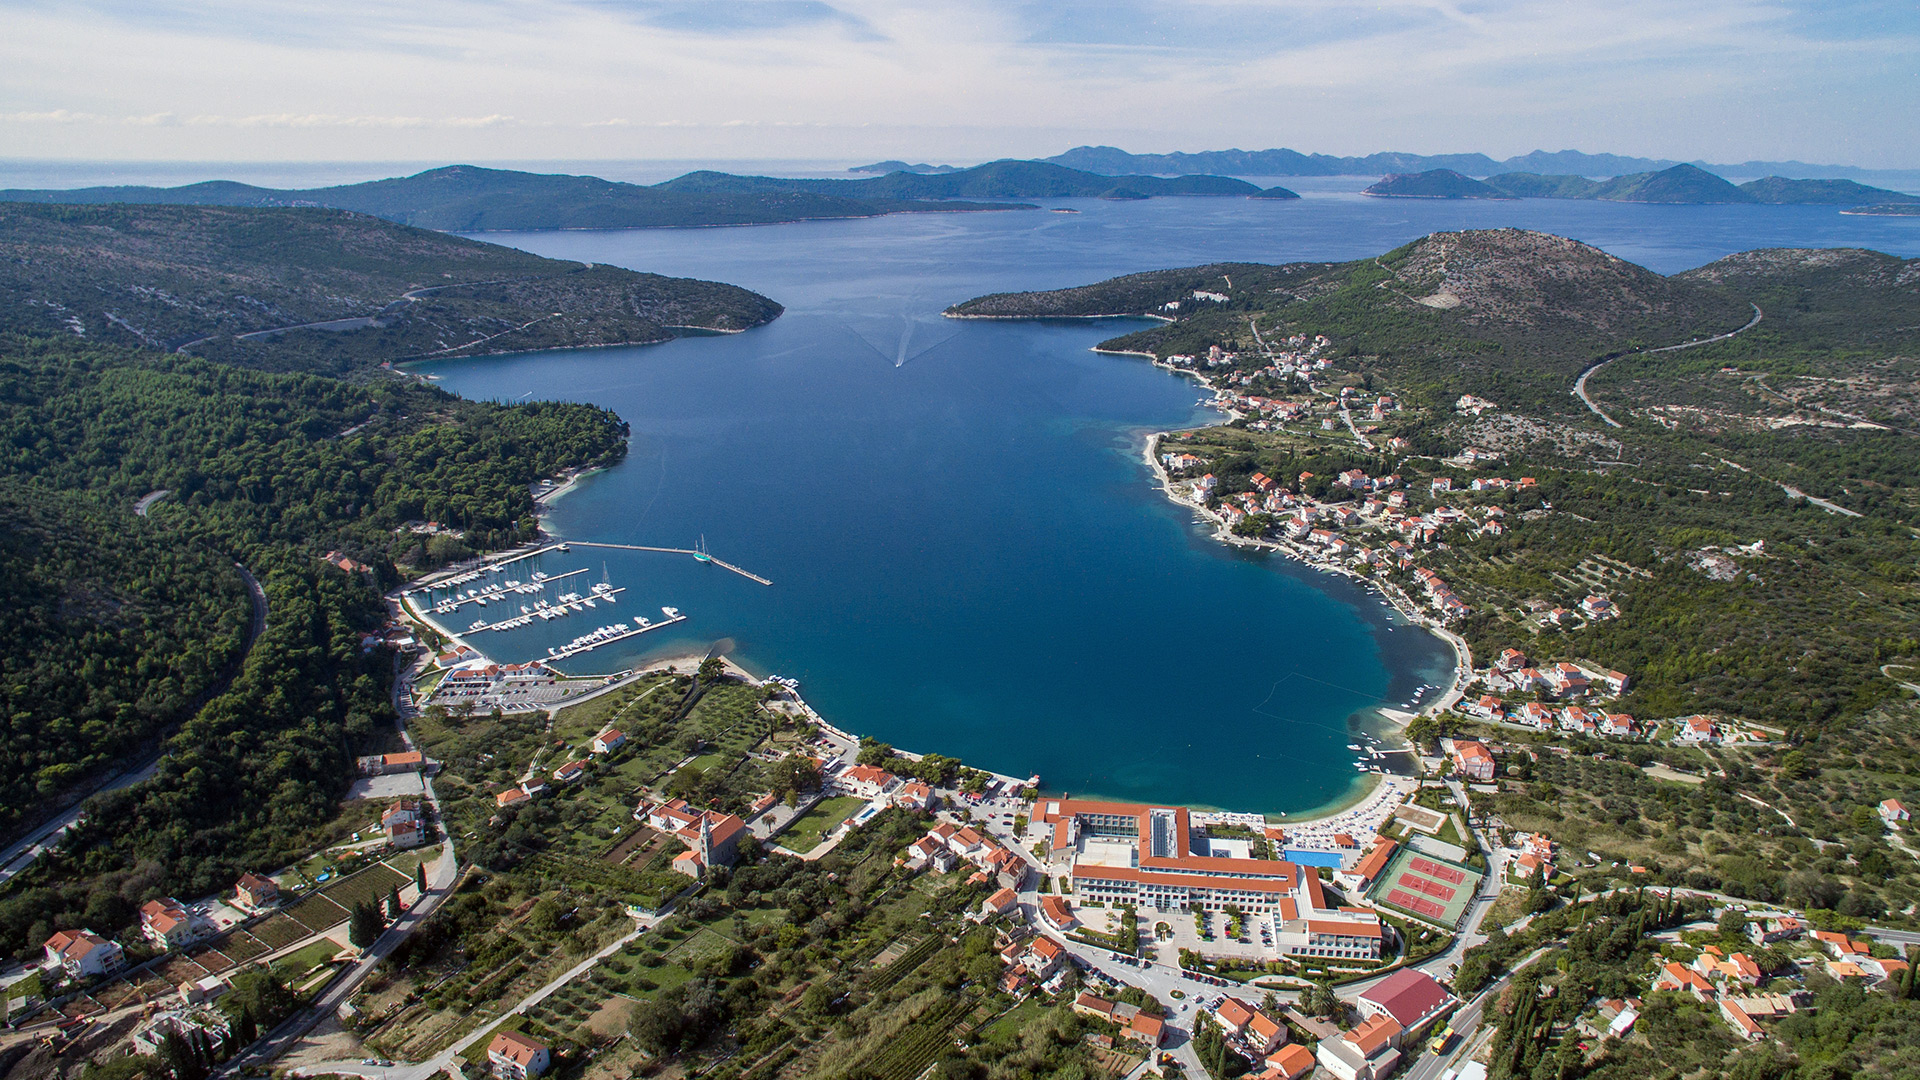 Адмирал Гранд Отель на берегу бухты, Слано, Хорватия - маршруты SimpleSail по Адриатике